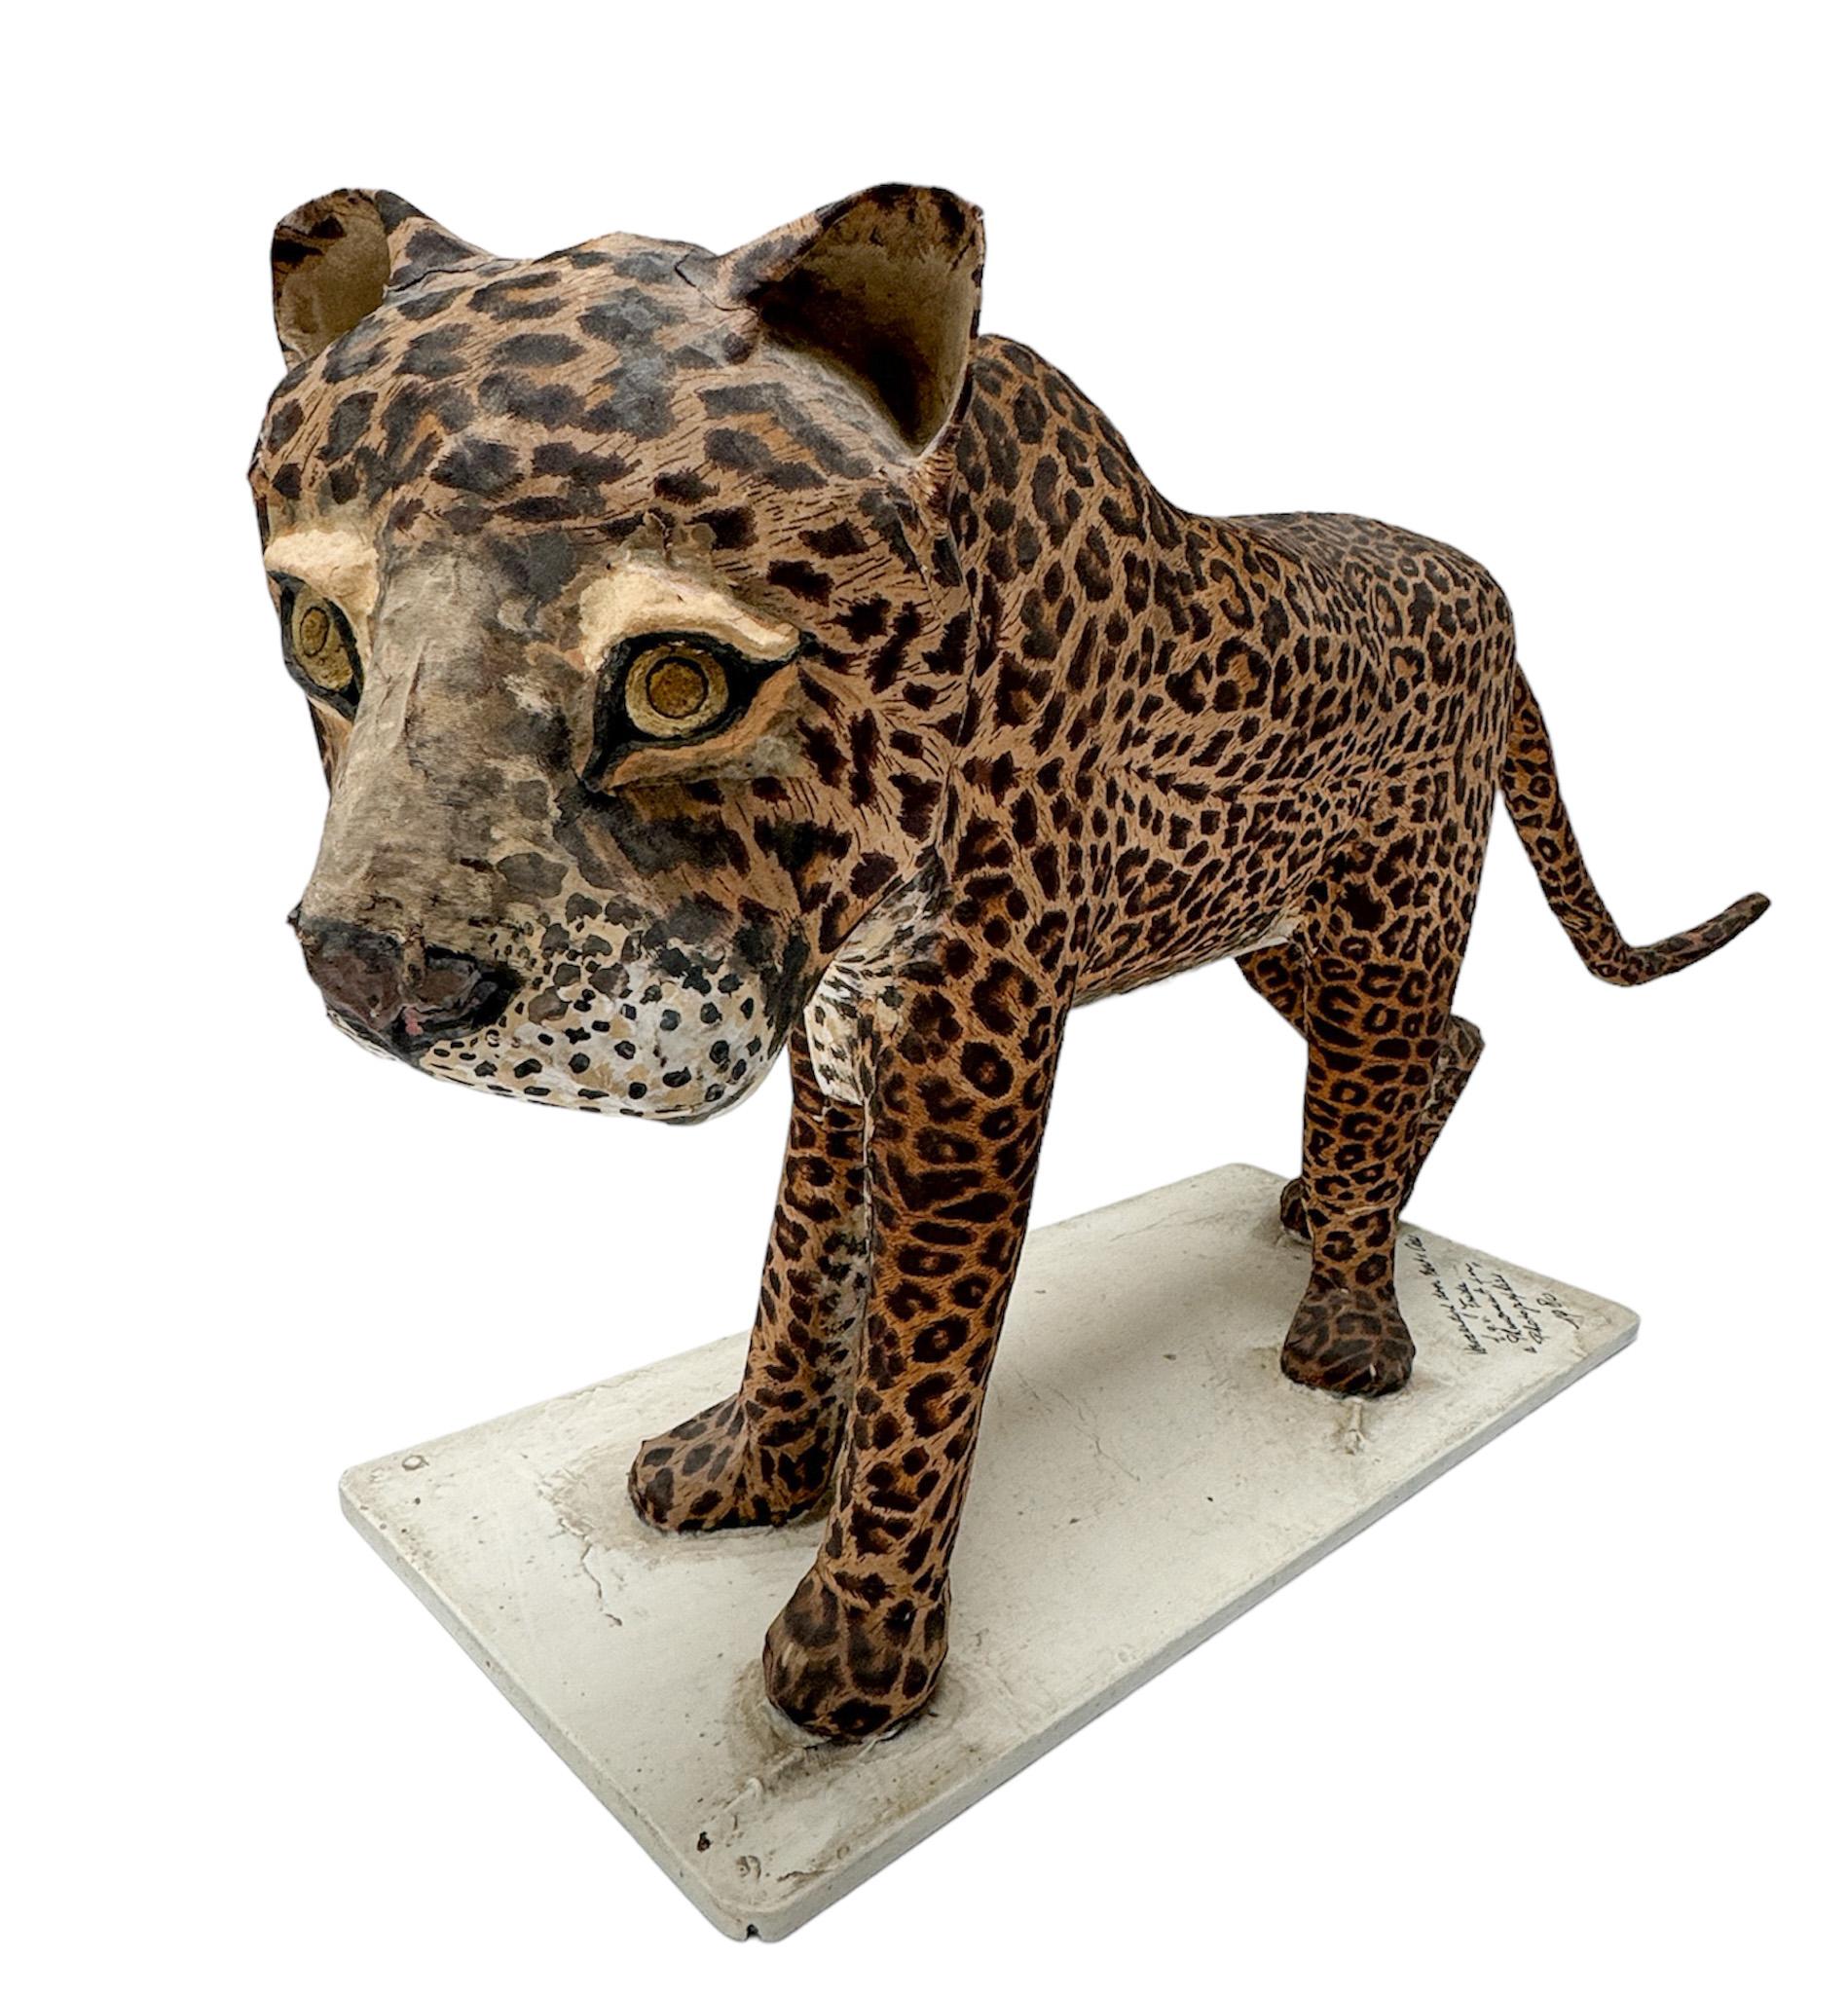 Atemberaubende und seltene einzigartige Mid-Century Modern Skulptur eines Leoparden.
Entwurf von Bert van Oers.
Auffälliges niederländisches Design von 1980.
Original handgefertigte und handbemalte Papiermachee-Skulptur auf einem bemalten